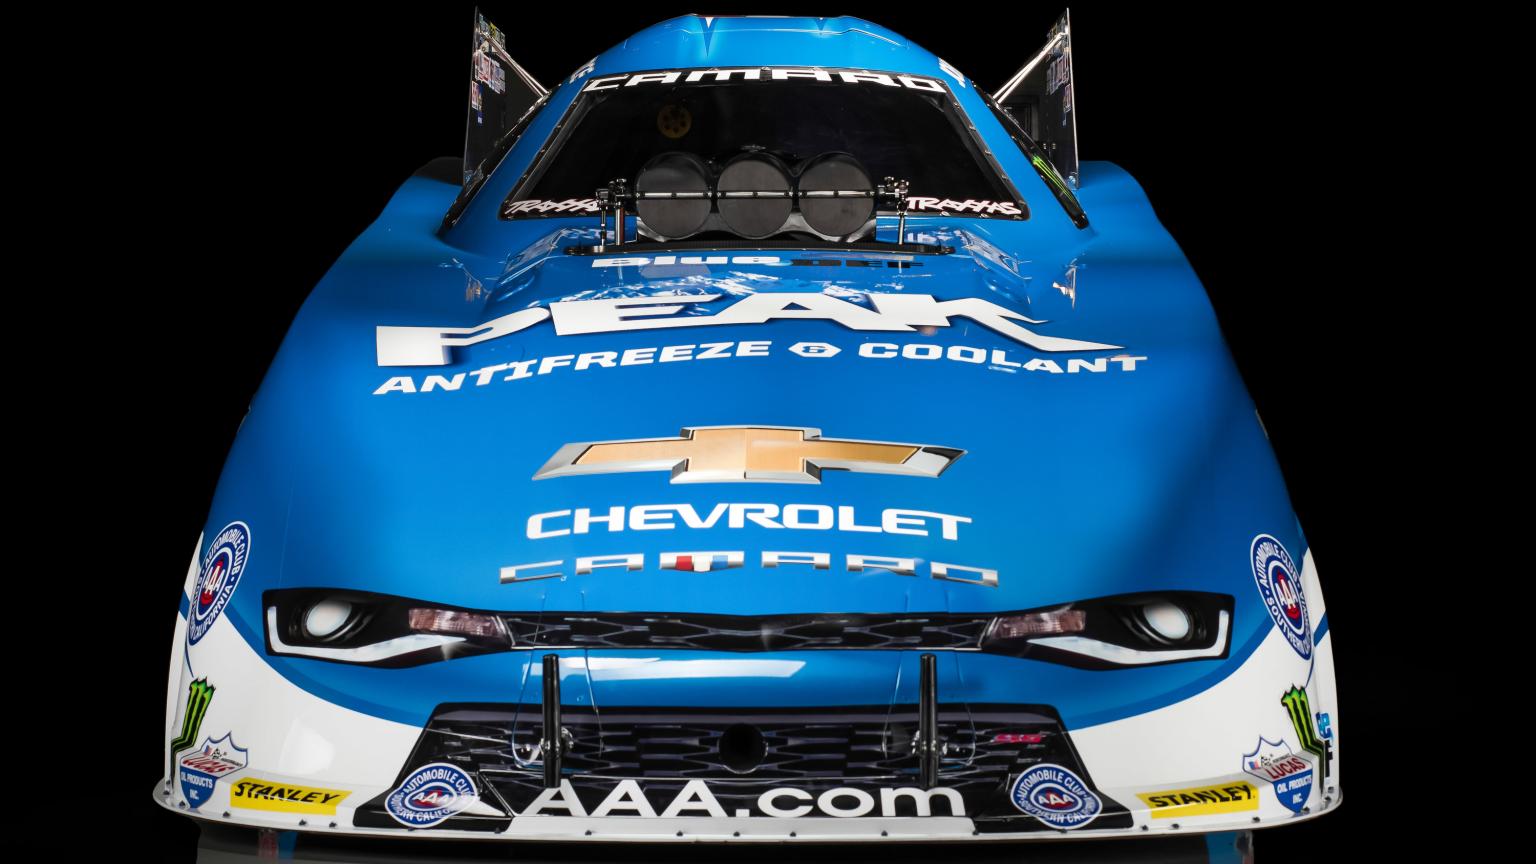 
Từ một chiếc Chevrolet Camaro tiểu chuẩn, hãng độ đã biến chiếc xe cơ bắp của Mỹ thành một con quái vật. Nhìn từ trước, xe như mang đầu của cá mập nhưng nhìn từ cạnh bên, xe sở hữu thân hình của một tên lửa.
